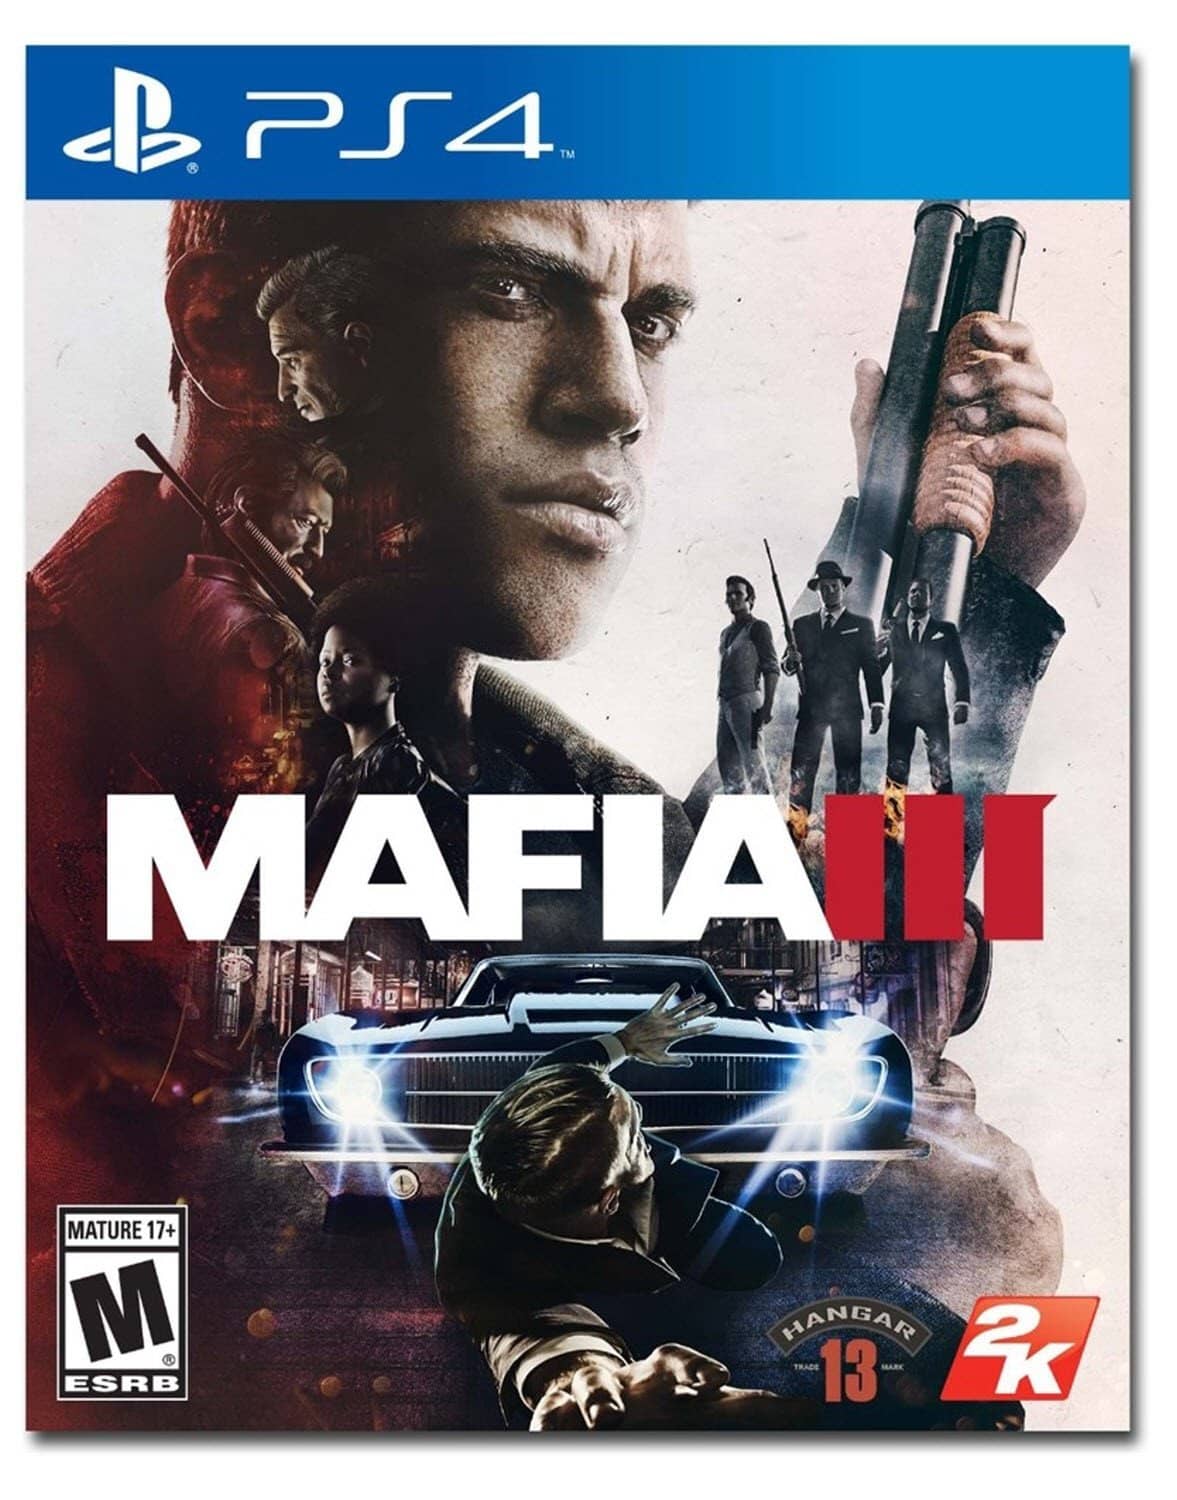 Mafia III - PlayStation 4